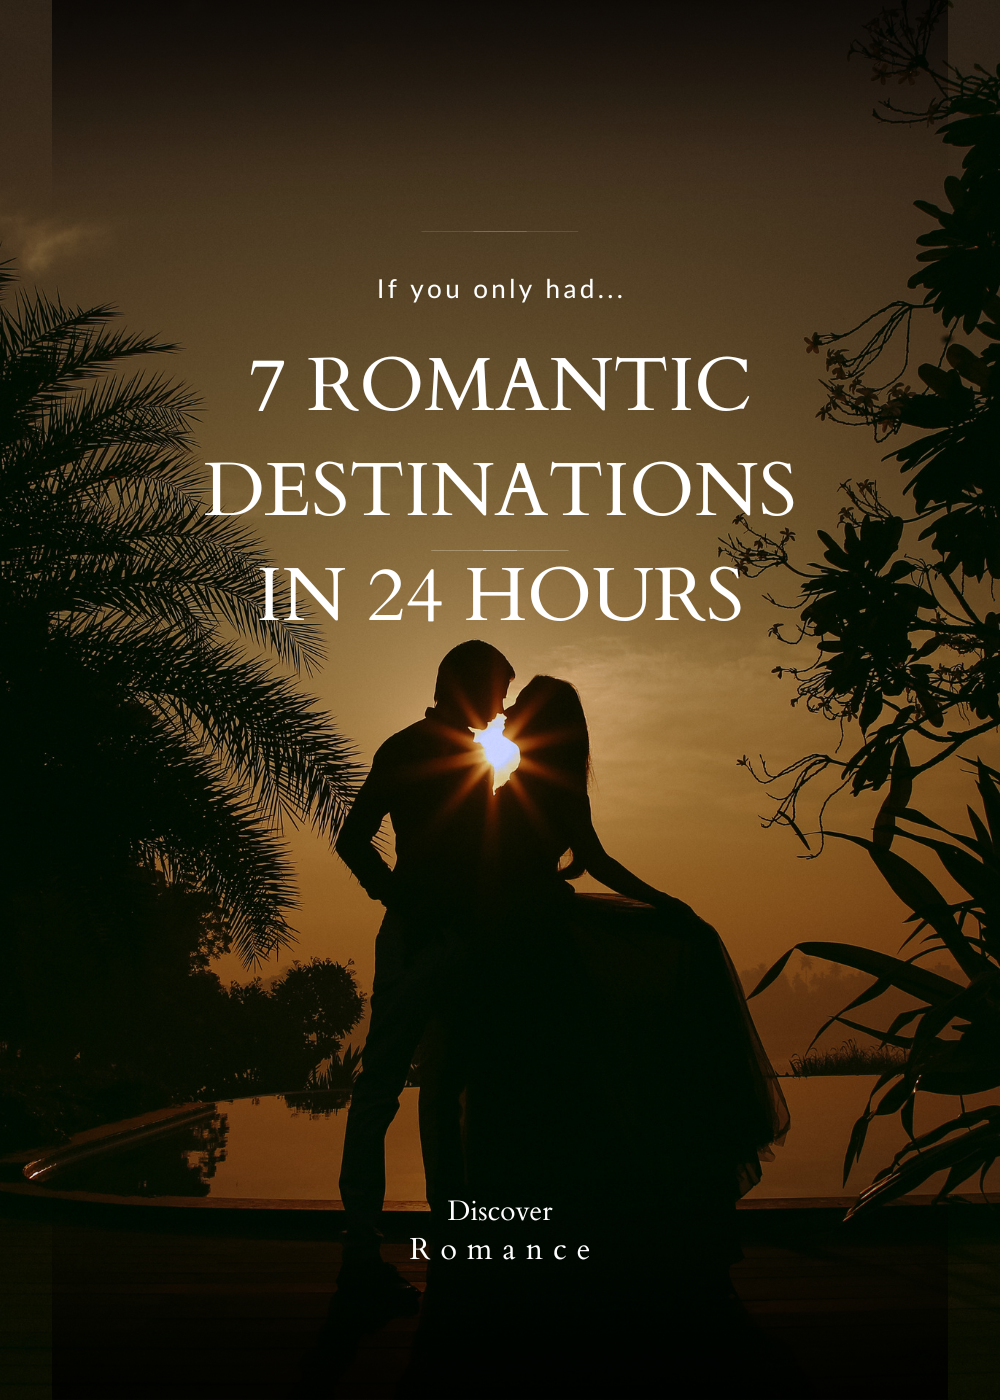 most romantic destinations romantic places hour travel guide ideas for your next romantic getaway